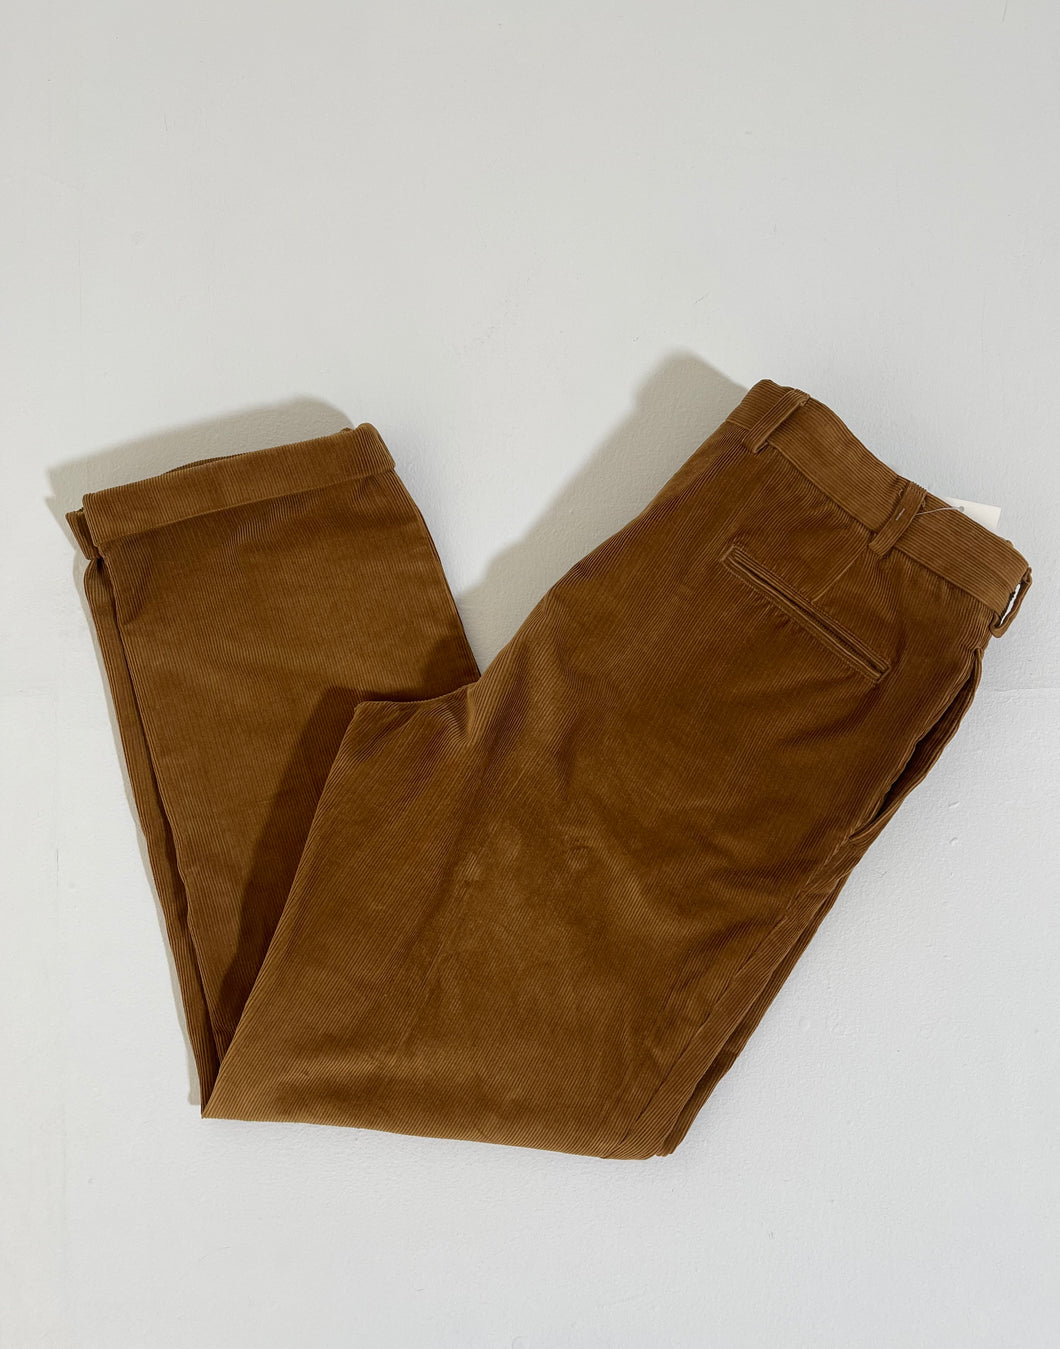 Vintage 38x34 Brown Corduroy Pants